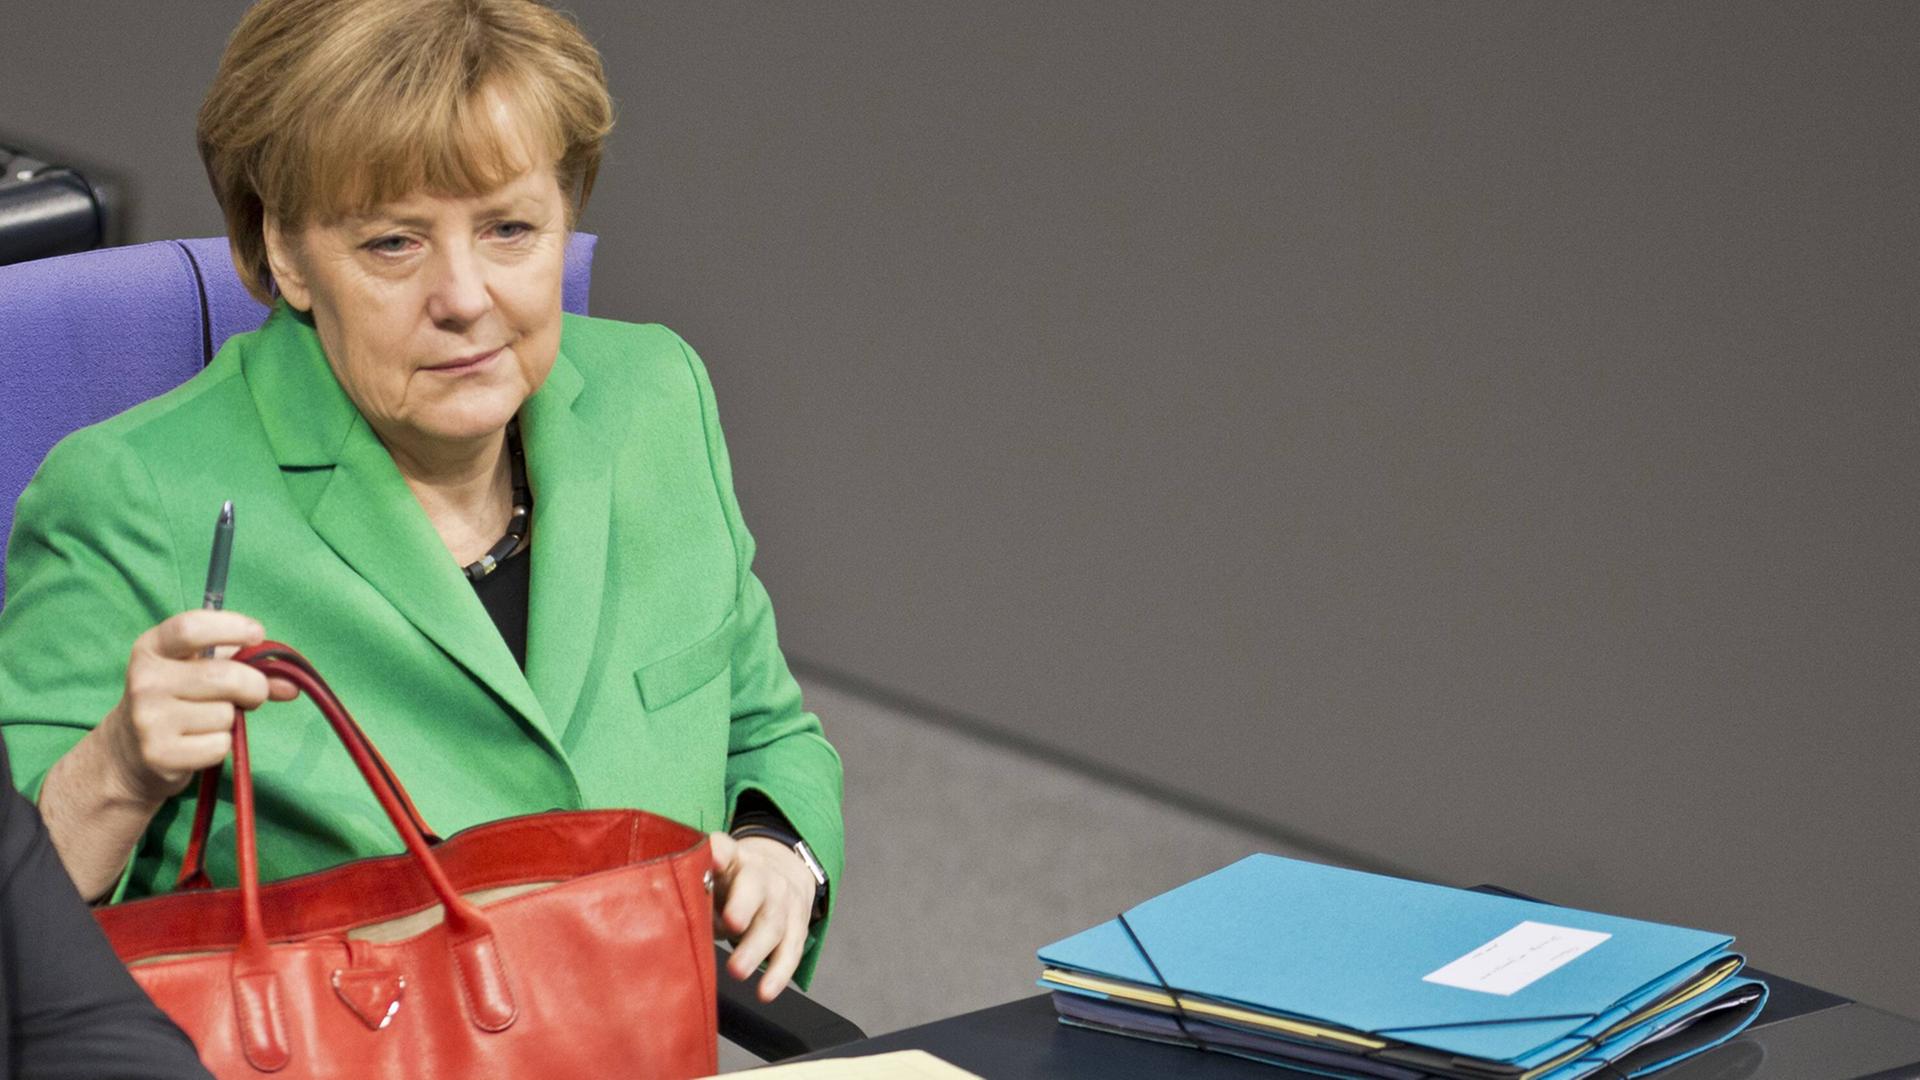 Bundeskanzlerin Angela Merkel im grünen Blazer mit roter Tasche